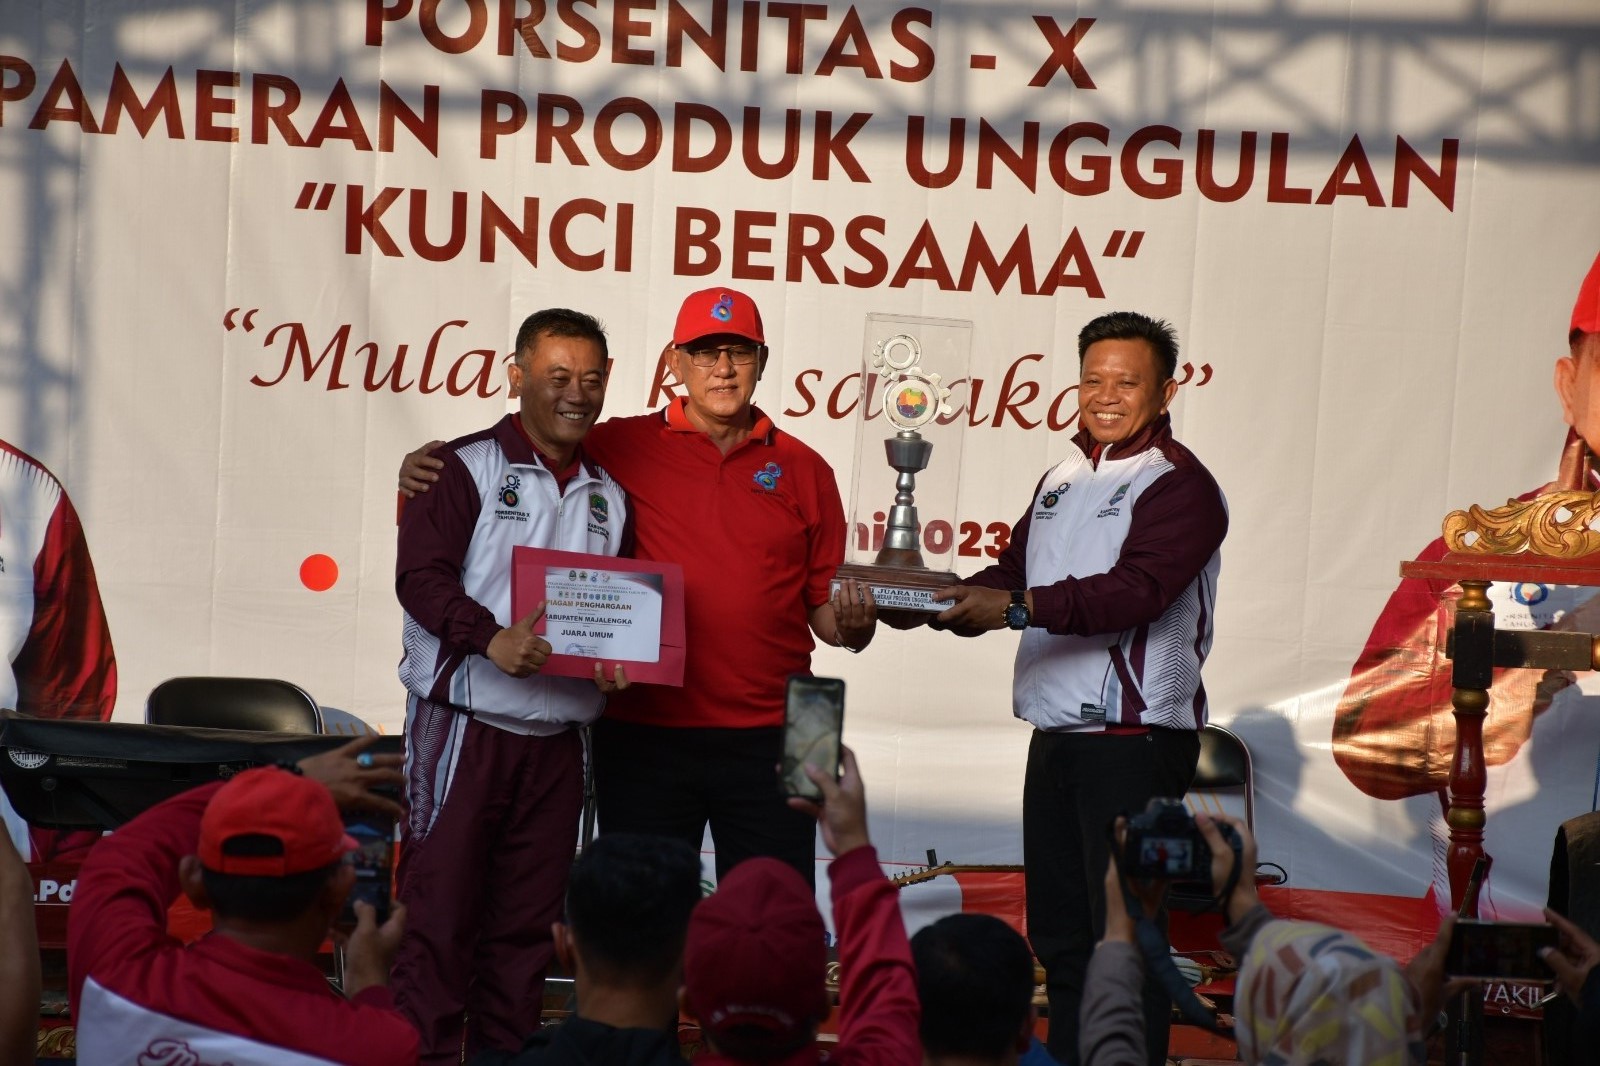 Kabupaten Majalengka Juara Umum Porsenitas ke-X Kunci Bersama Jabar-Jateng